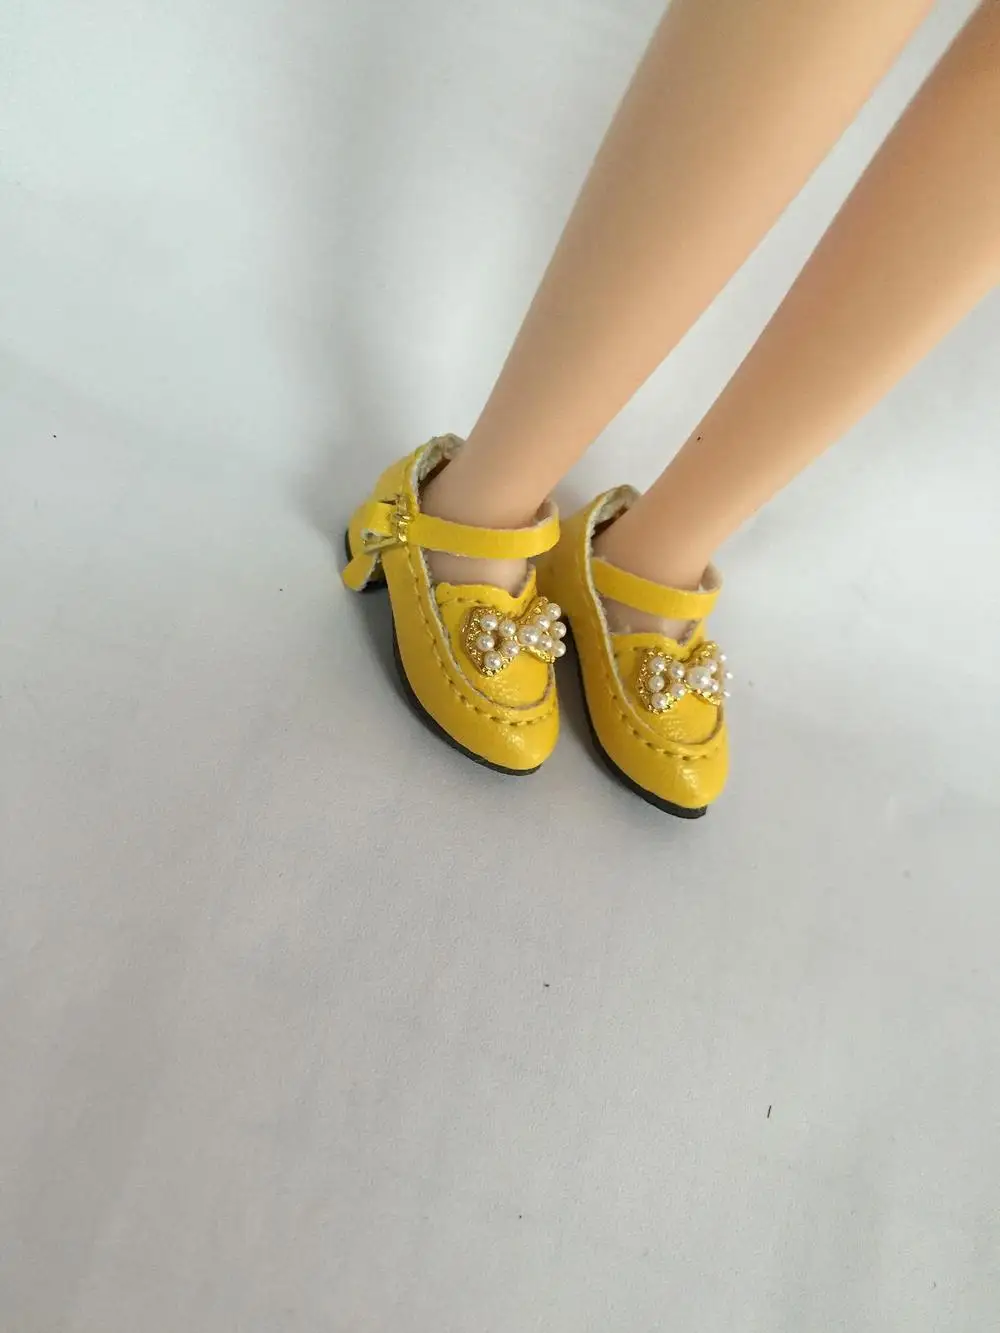 Куклы обувь для blyth Azone куклы OB кукла licca и т. д. Длина: 2,8 см повседневная обувь на плоской подошве